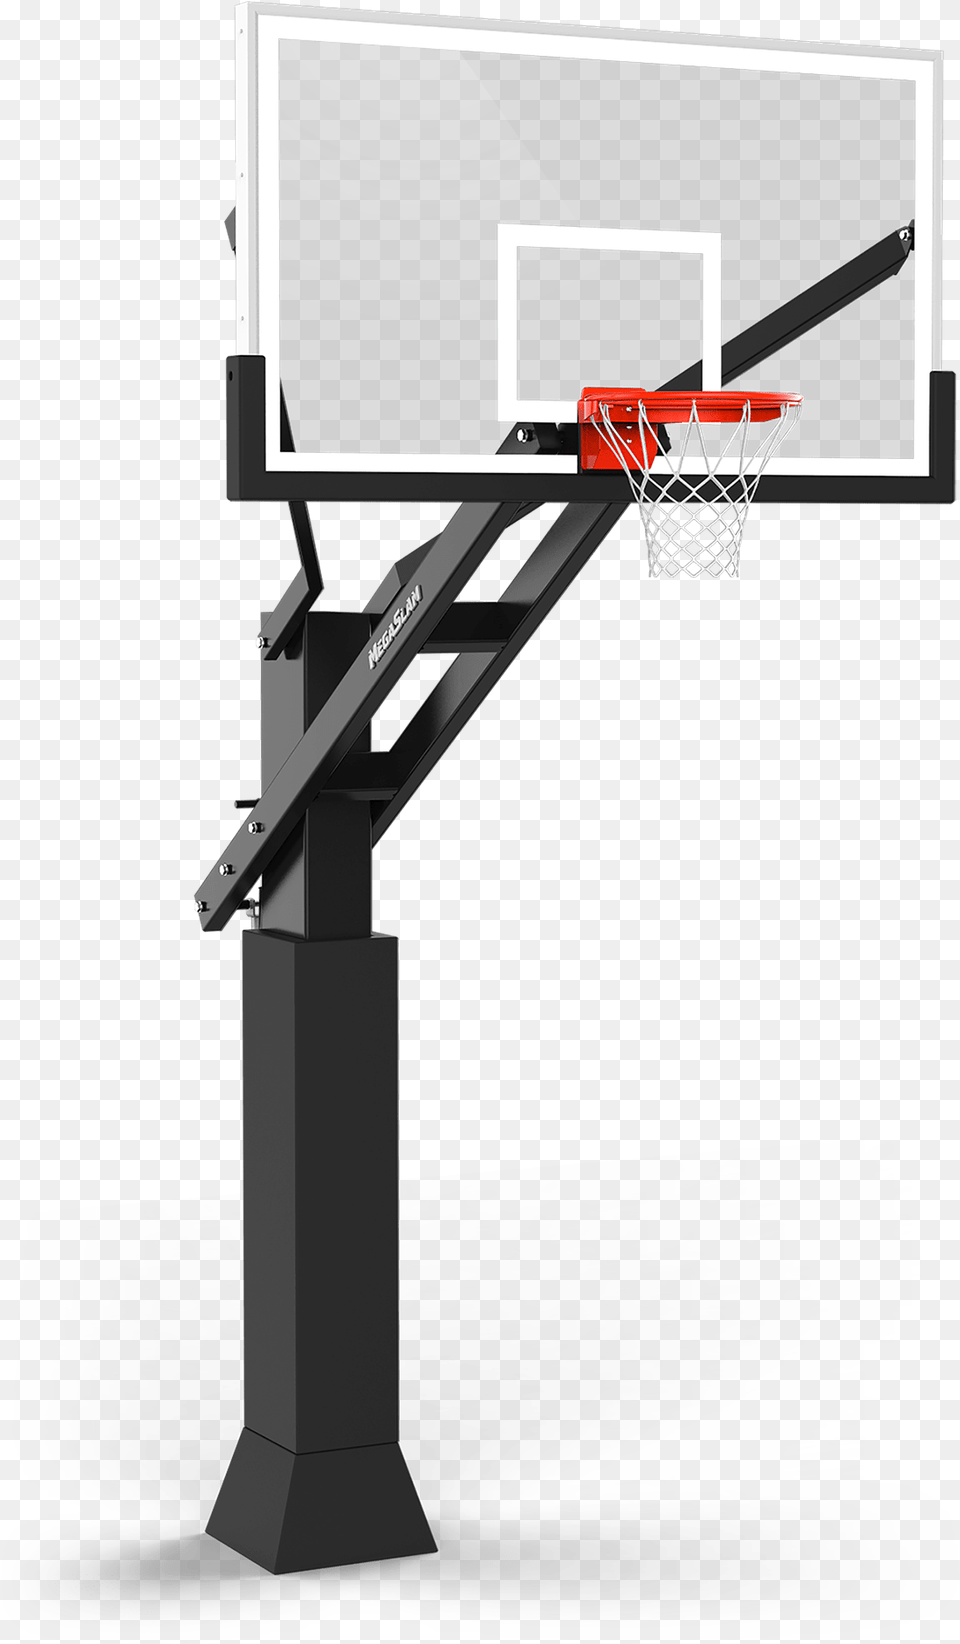 Outdoor Basketball Goal Mega Slam Hoops Outdoor Basketball Goal, Hoop Png